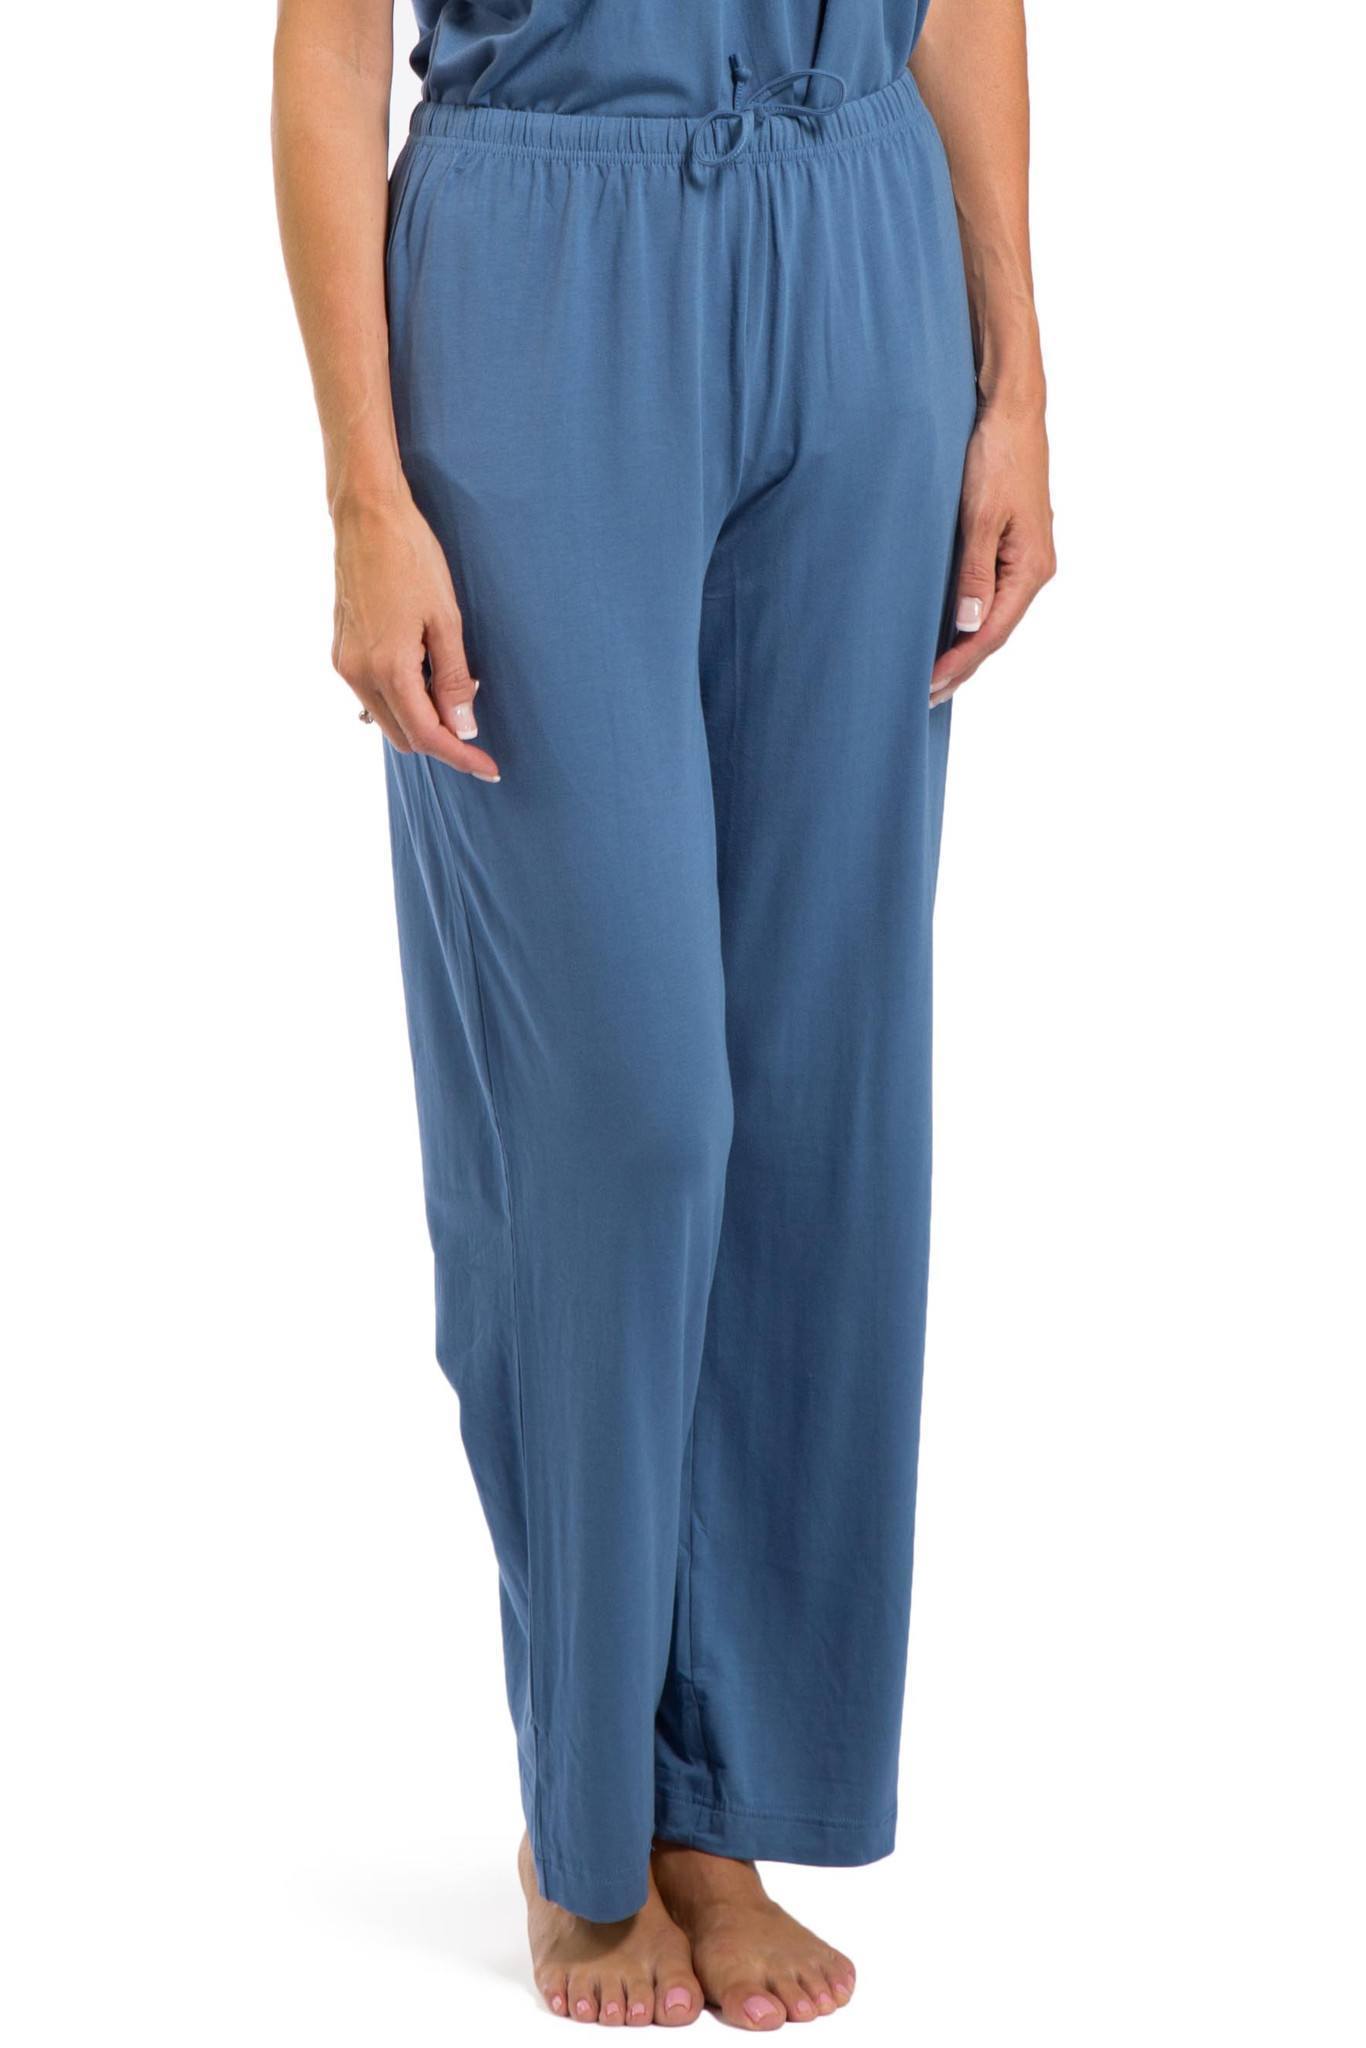 Women's Pajamas, Organic Cotton V-Neck Pajama Set